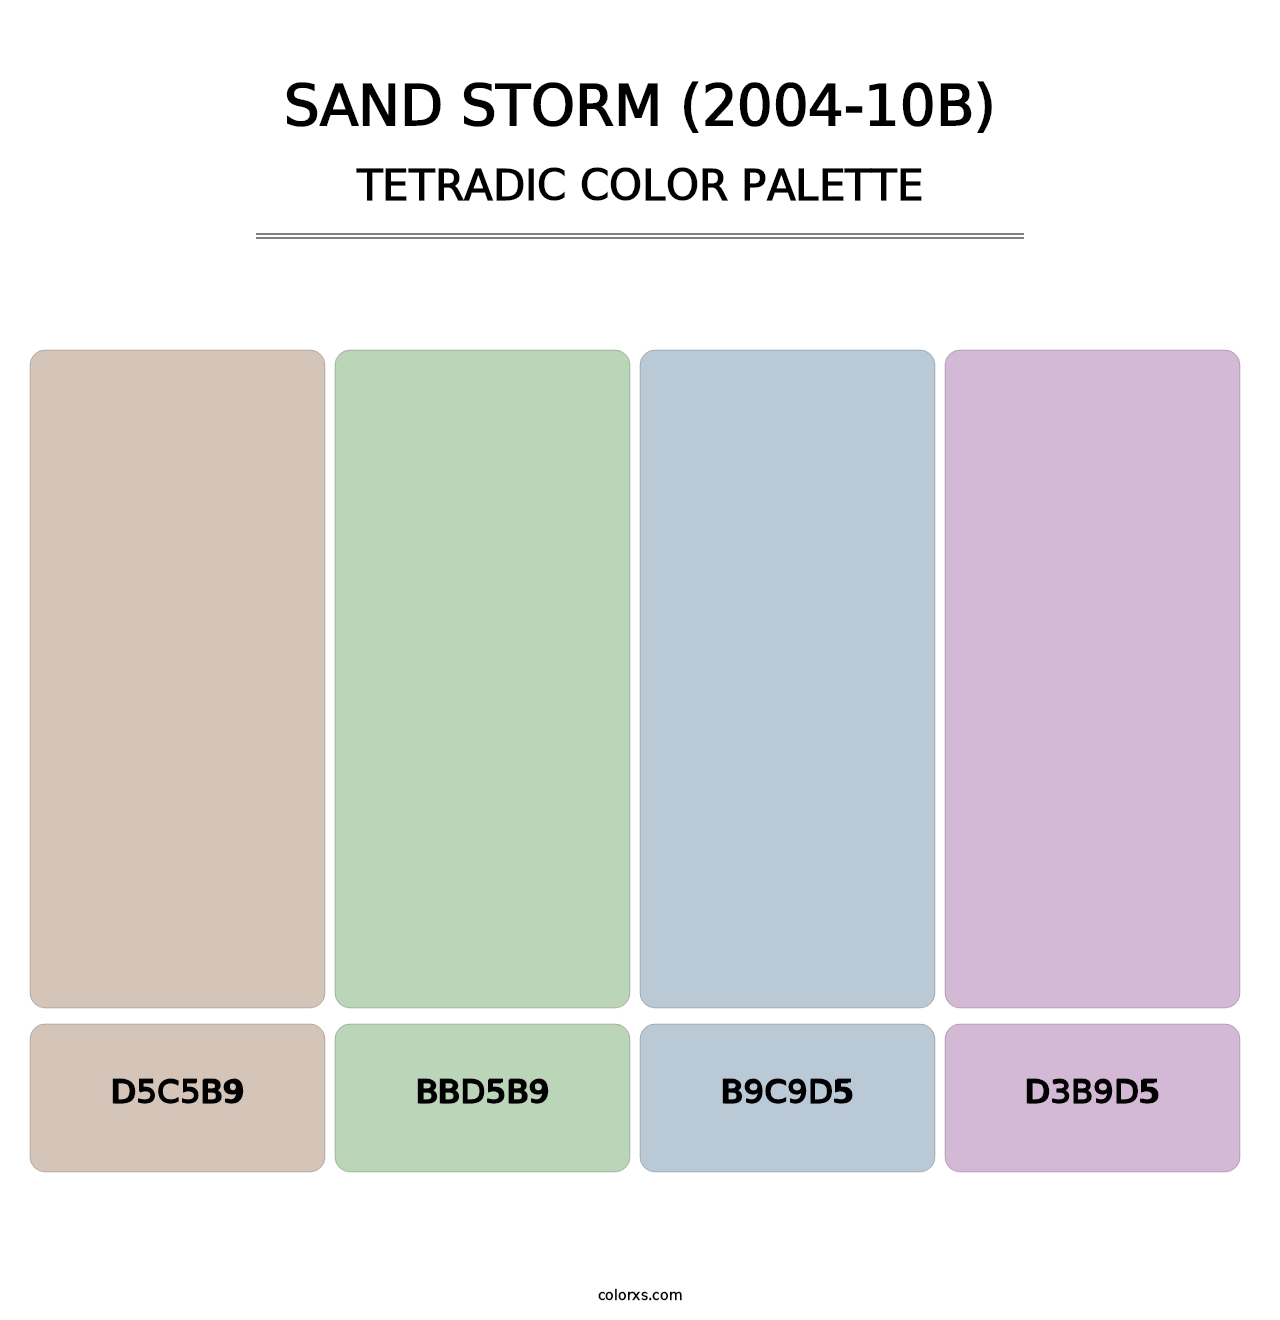 Sand Storm (2004-10B) - Tetradic Color Palette